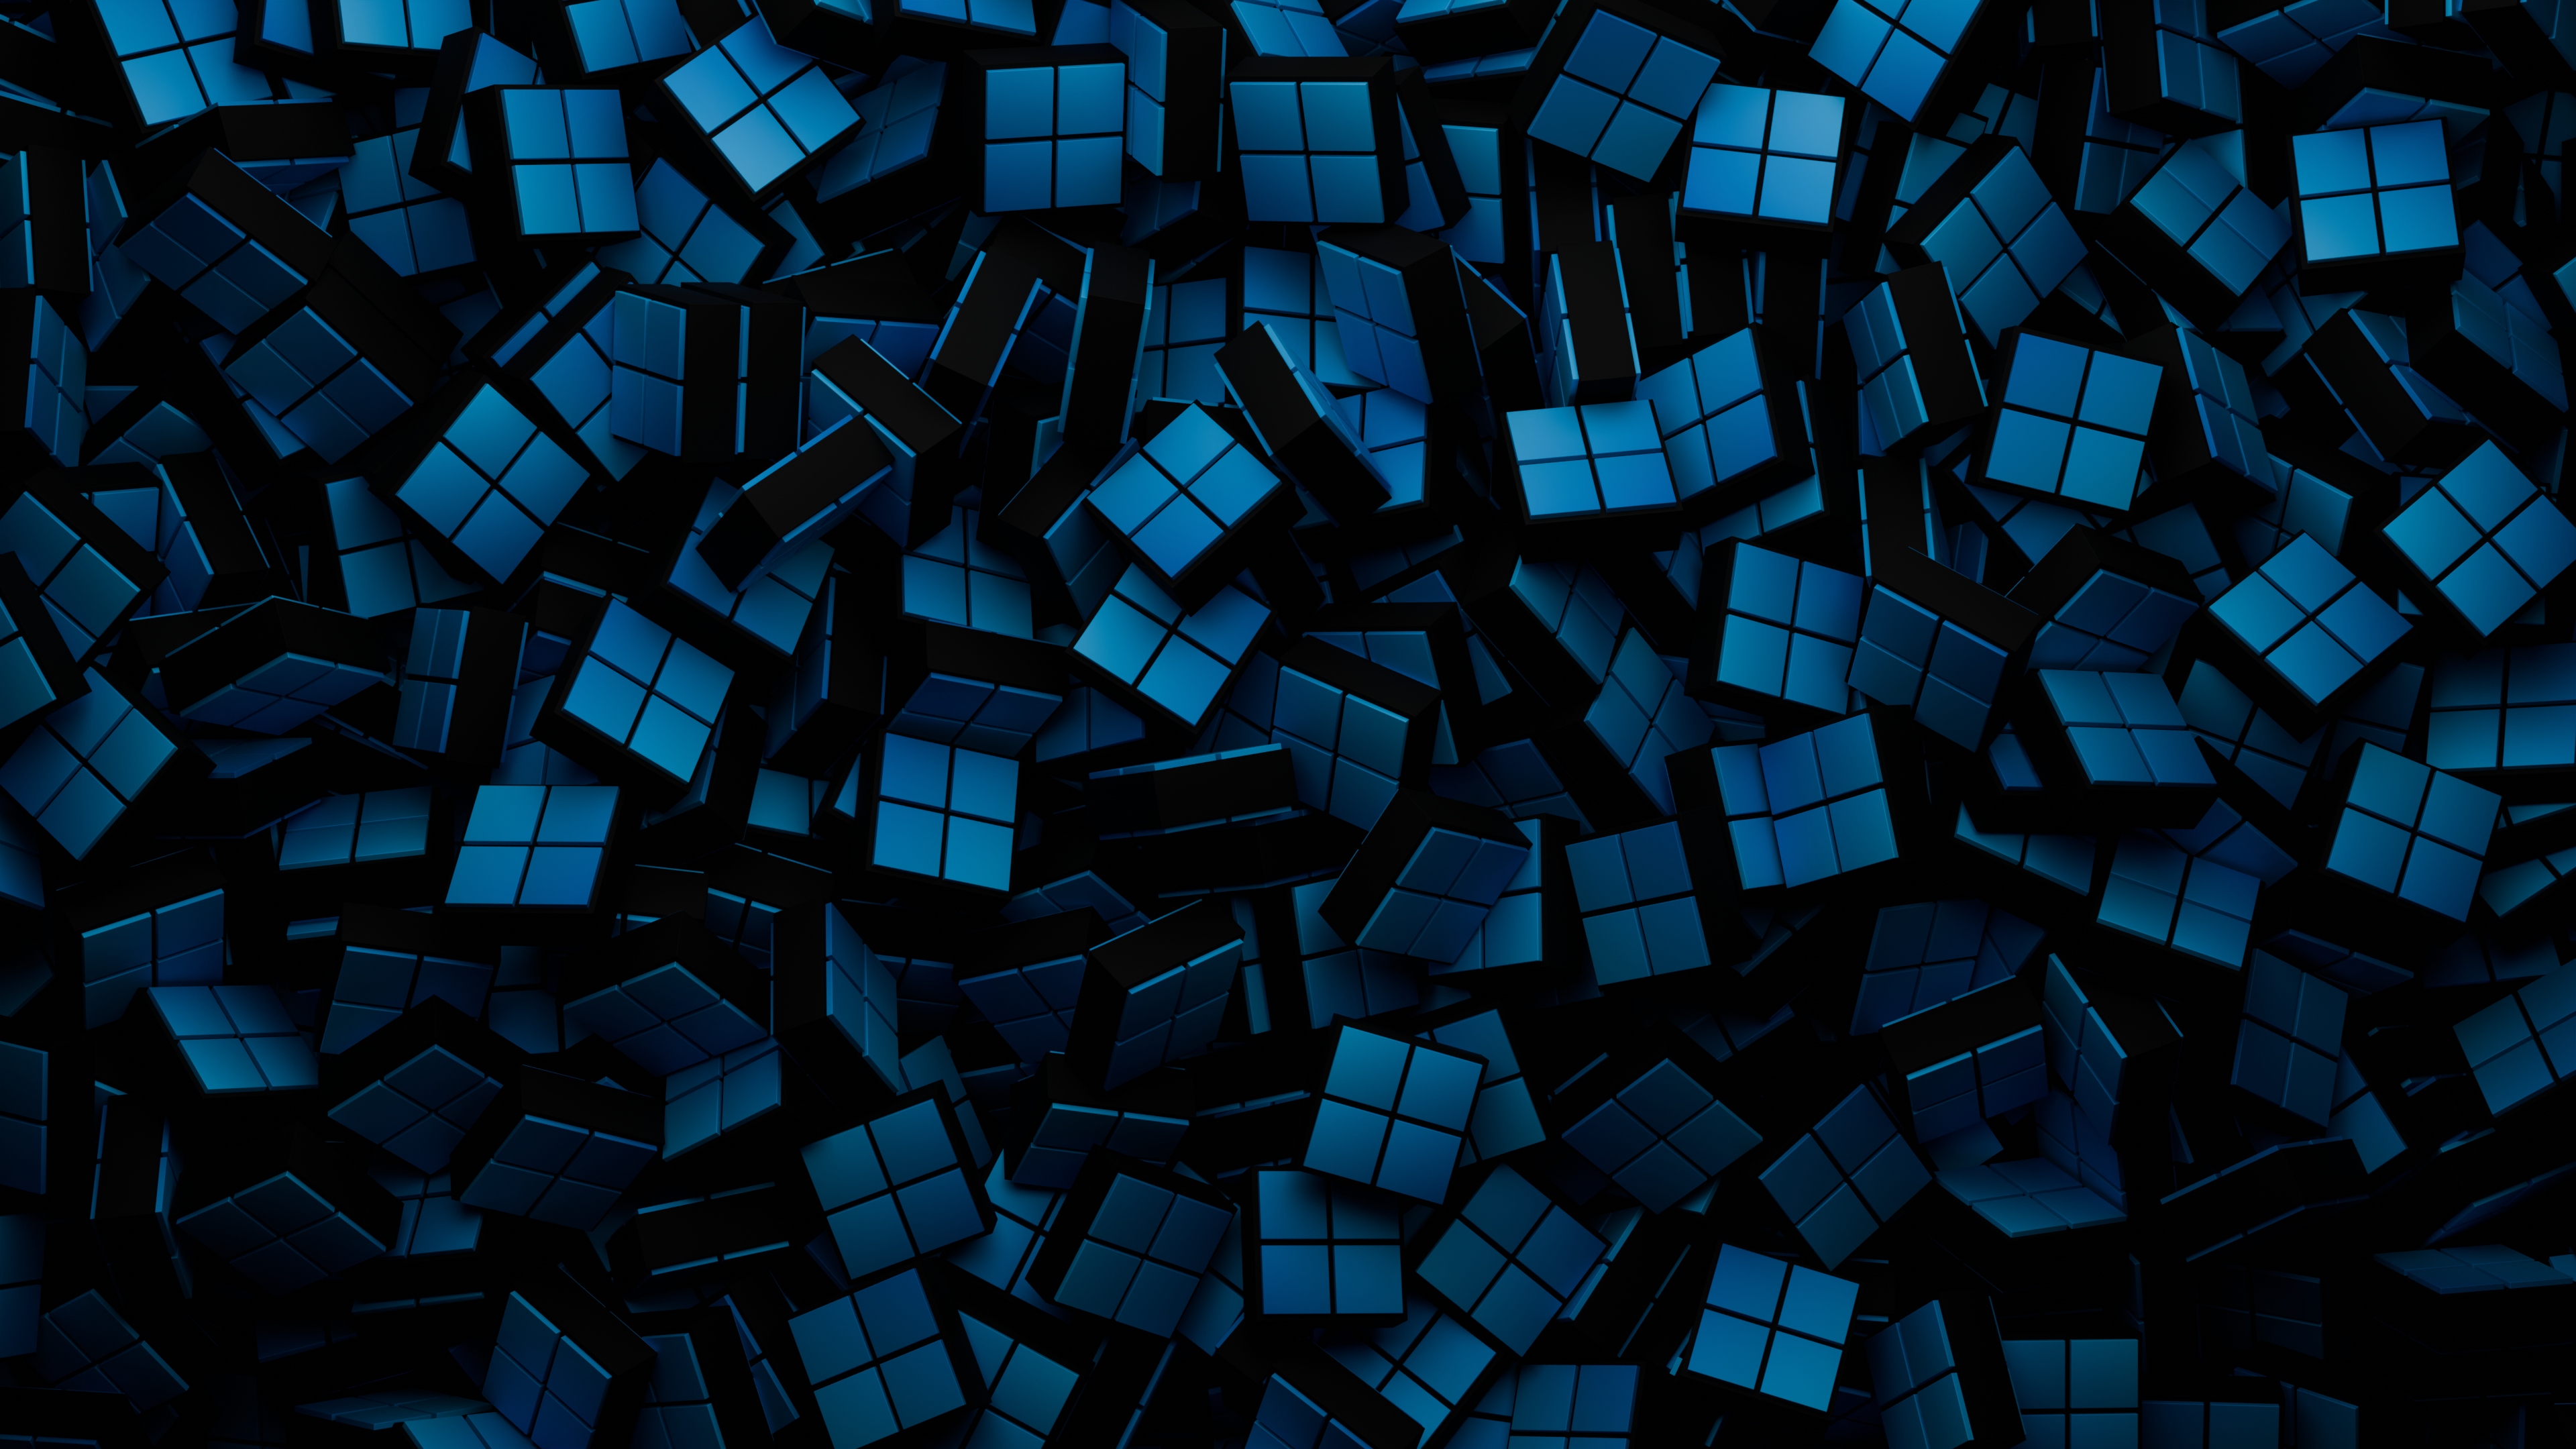 Lots of little blue cubes